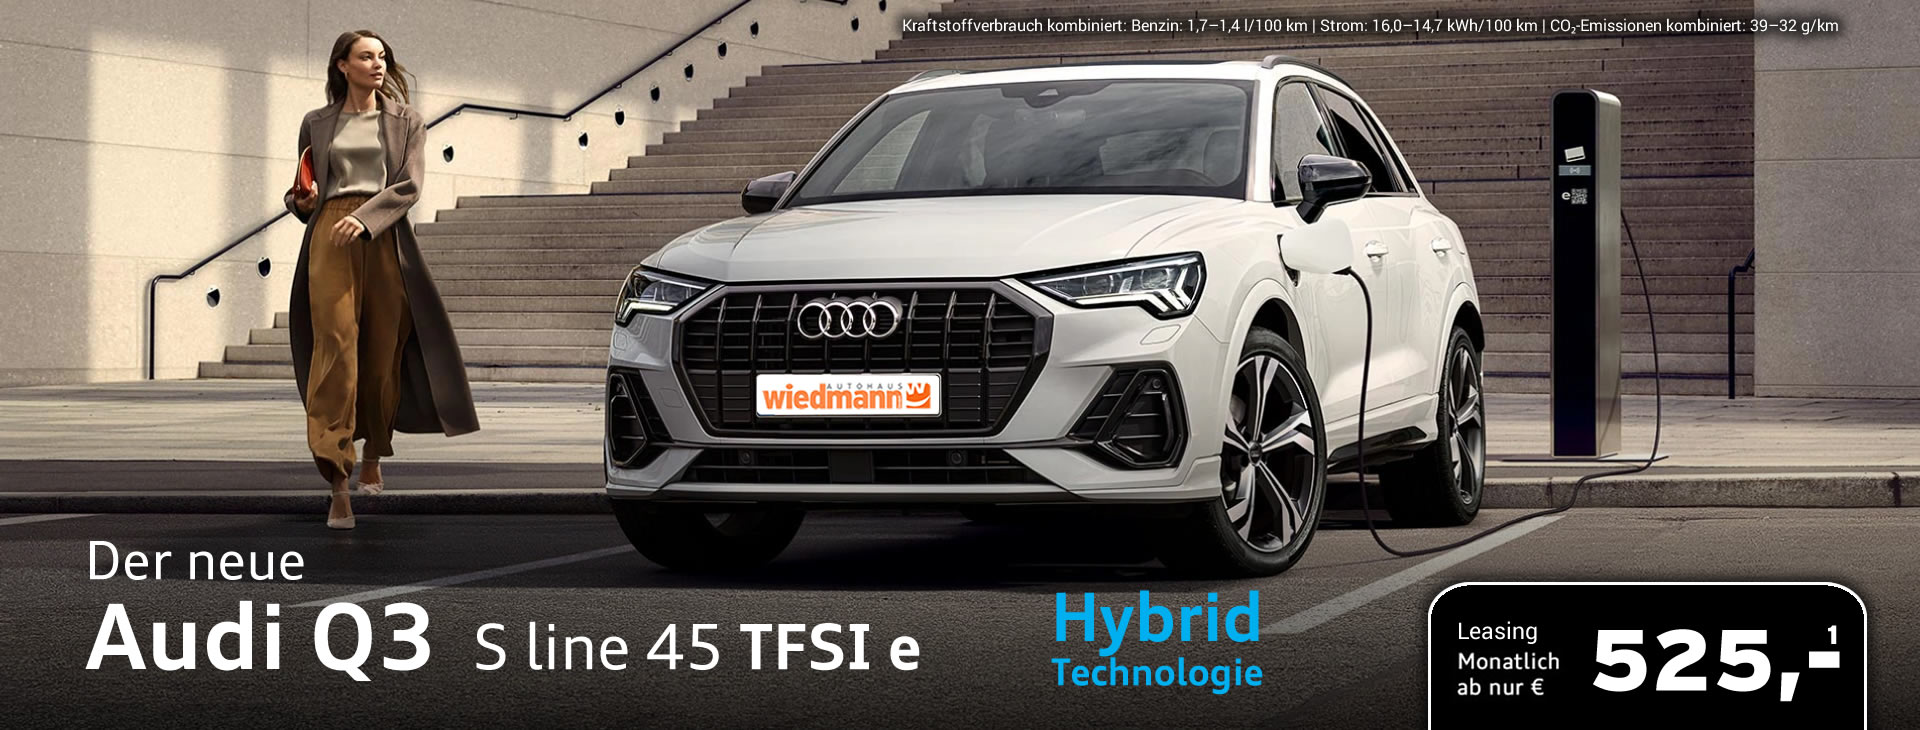 Audi Q3 TFSI e Hybrid